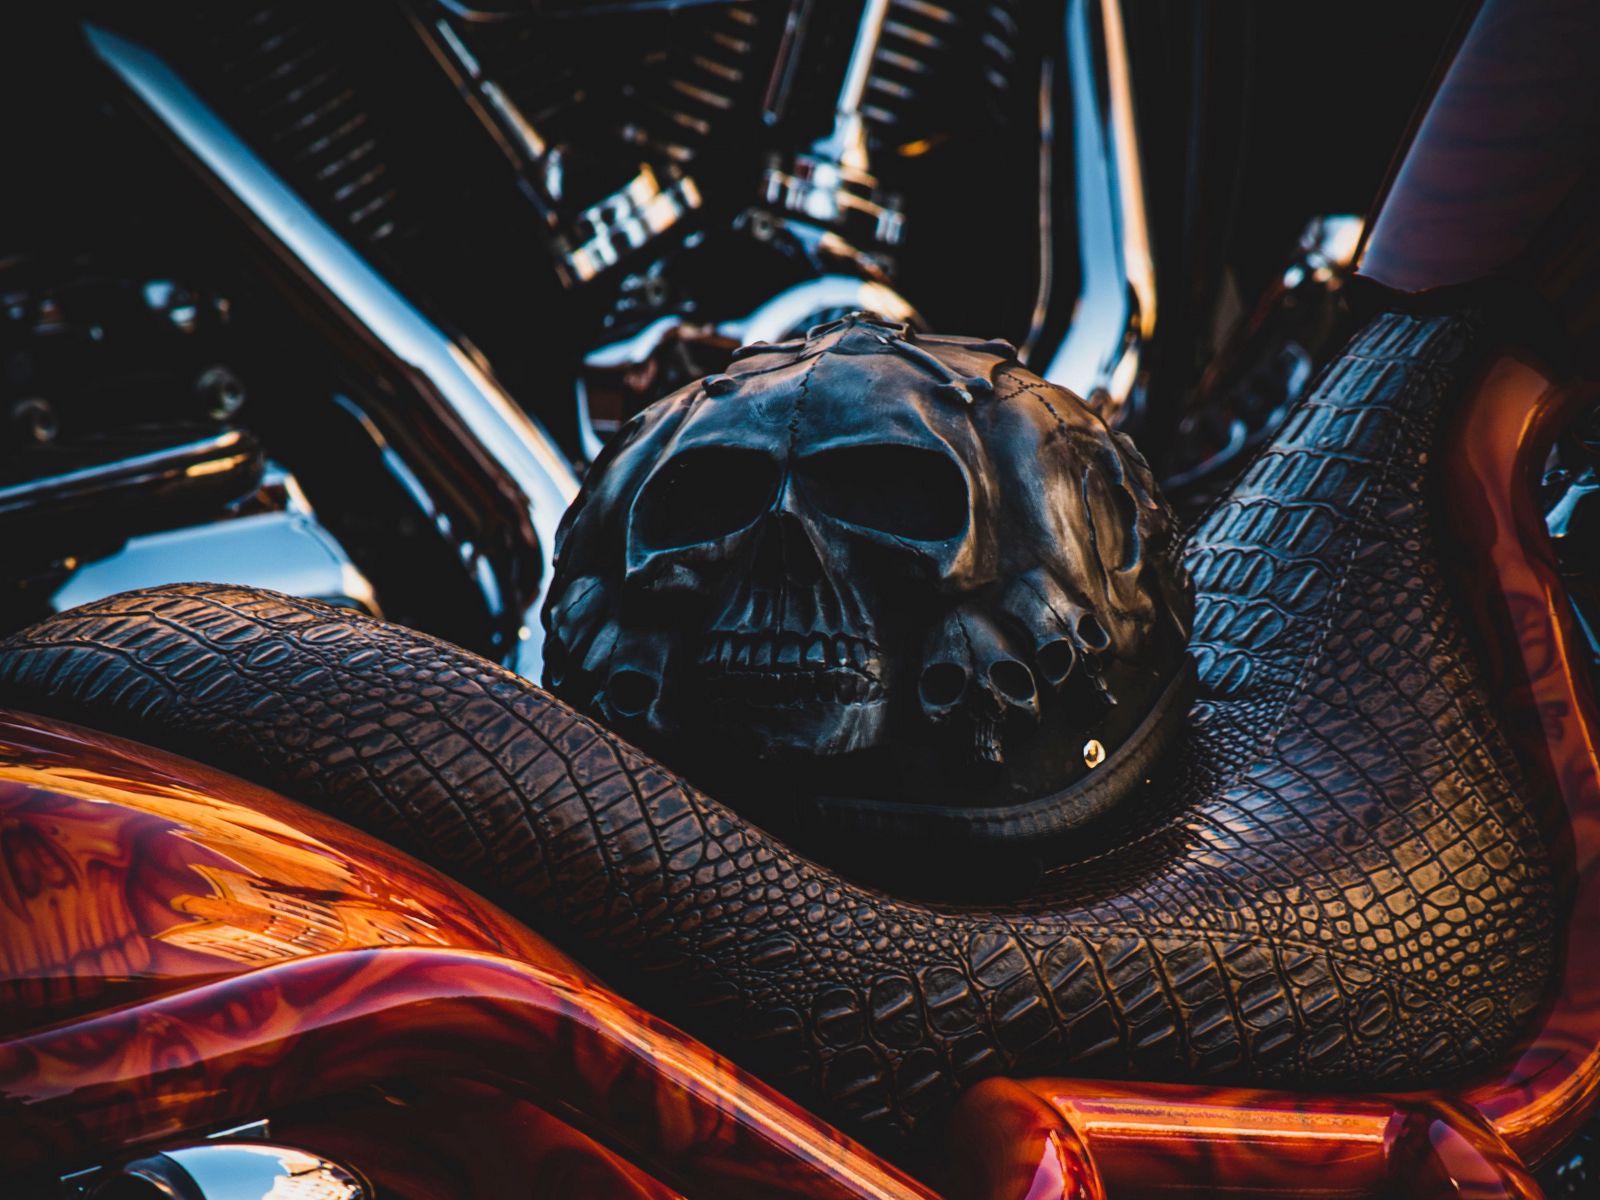 Download wallpaper 1600x1200 bike, helmet, motorcycle, skulls standard 4:3  hd background